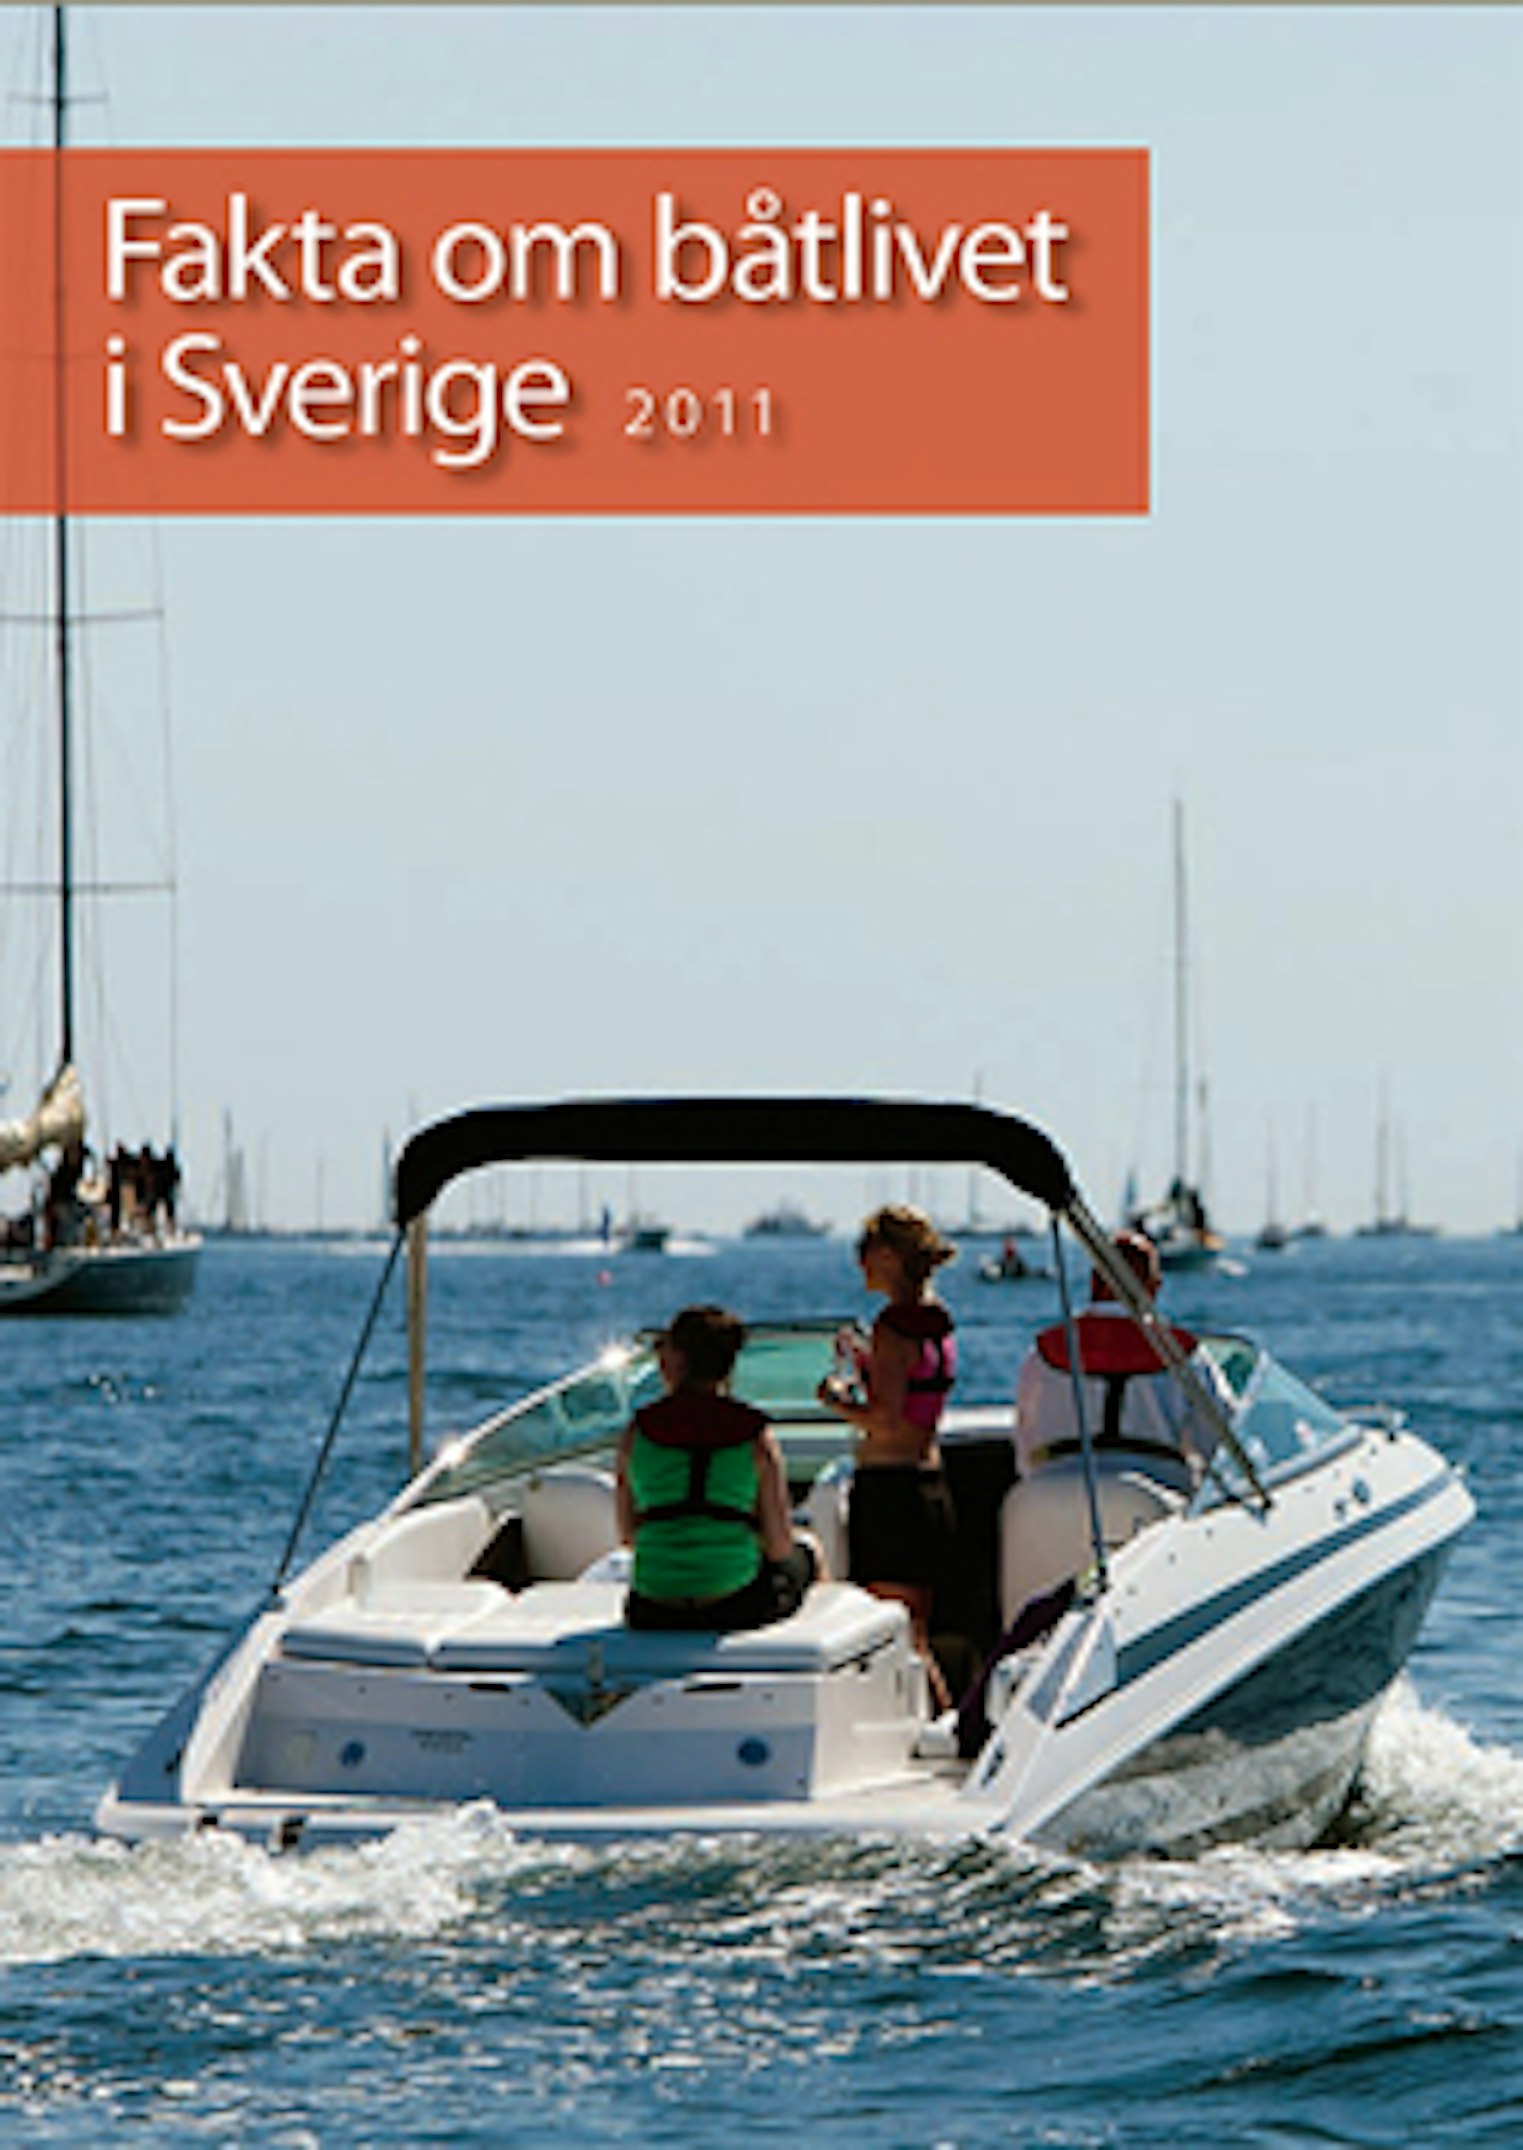 Sweboat ger ut Fakta om båtlivet i Sverige årligen.